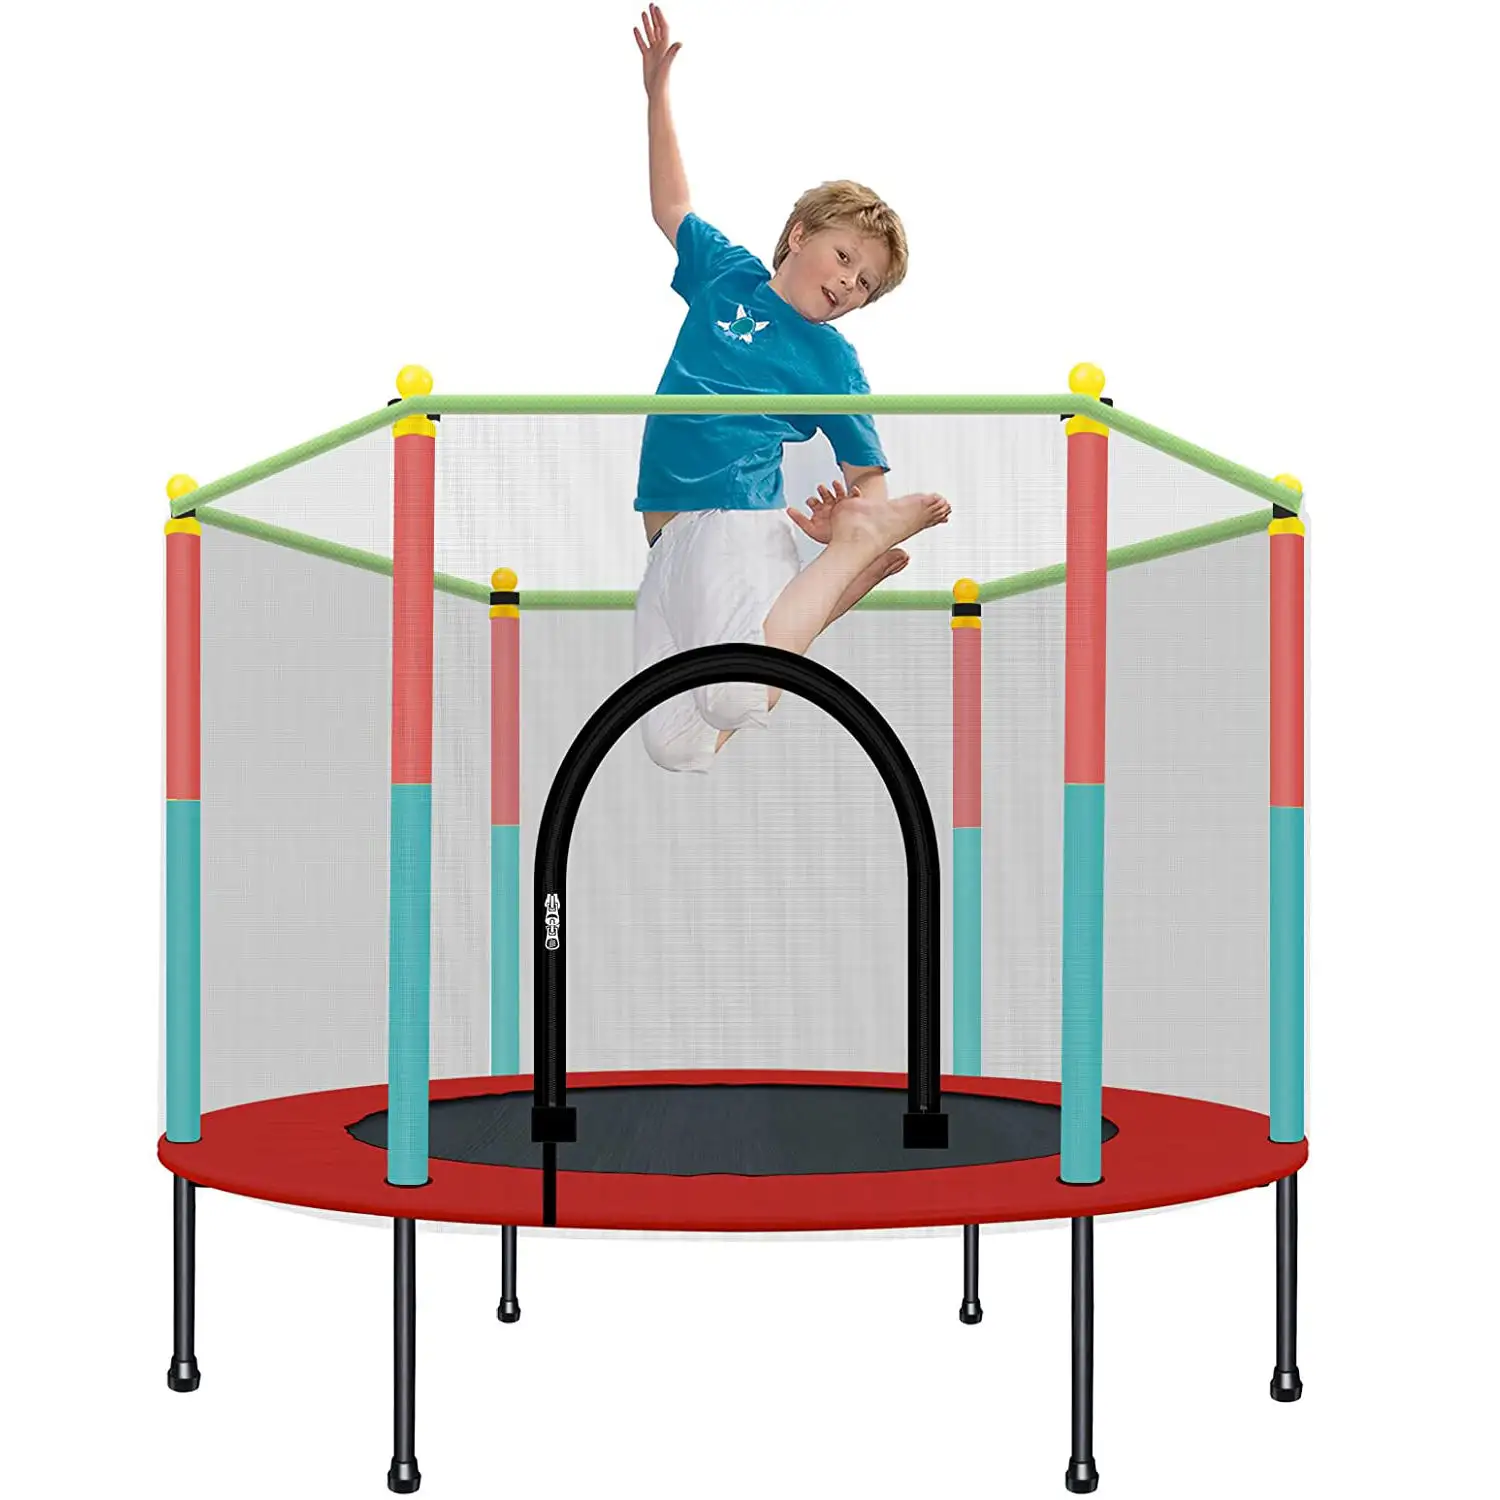 Trampolín para niños de interior y exterior con recinto Net Gymnastic Jumping Bed Juego interactivo para padres e hijos Fitness Trampolín Unisex